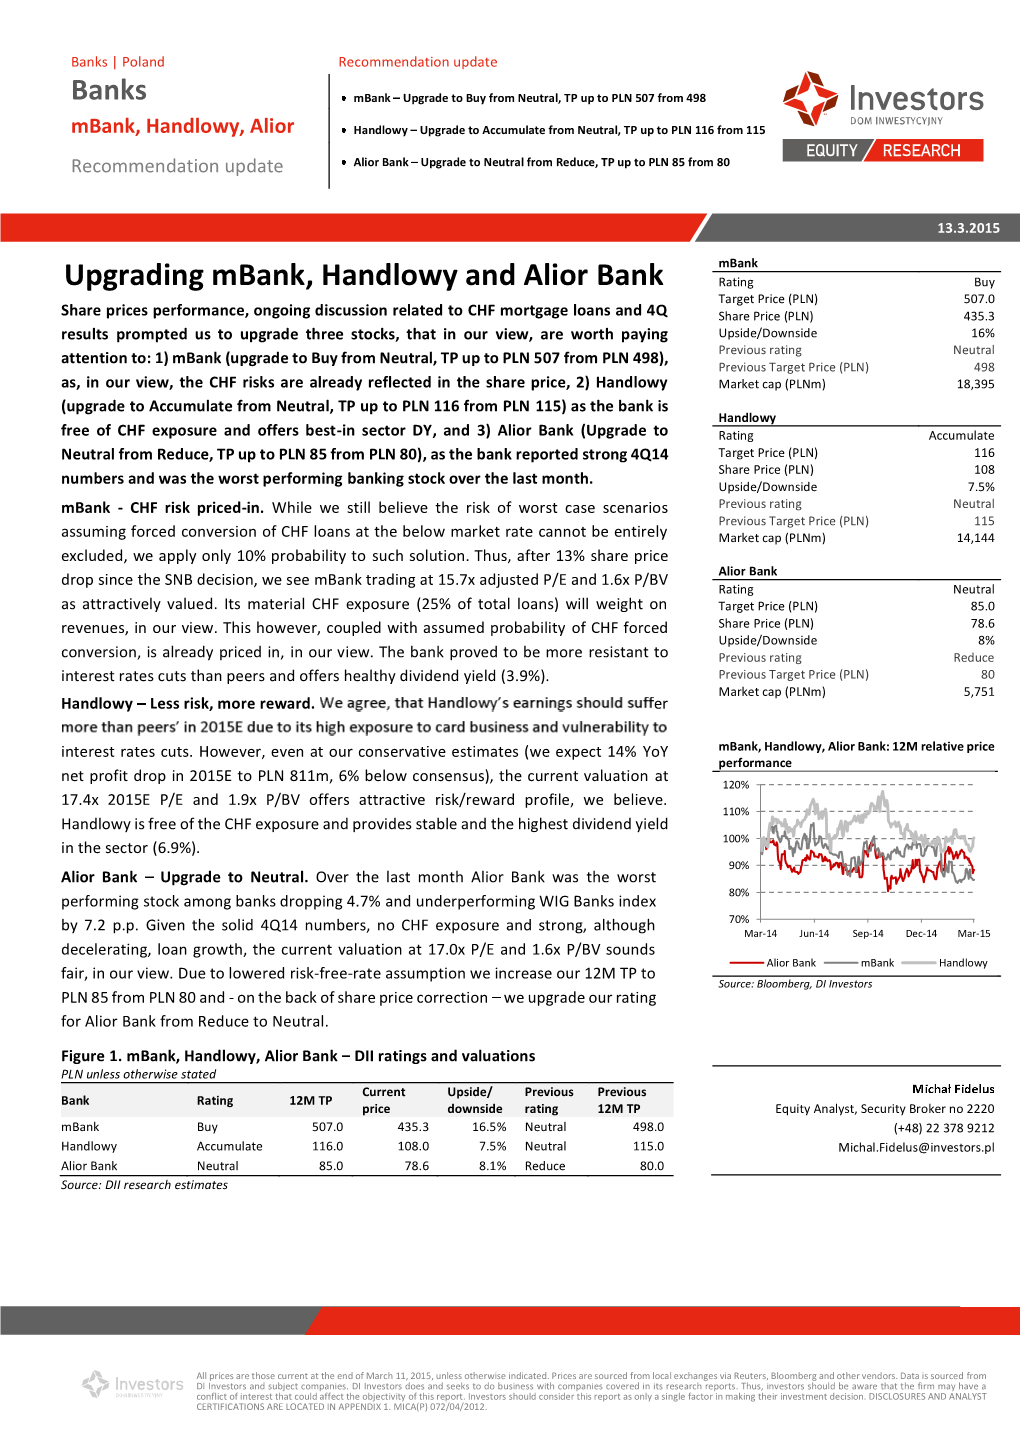 Upgrading Mbank, Handlowy and Alior Bank